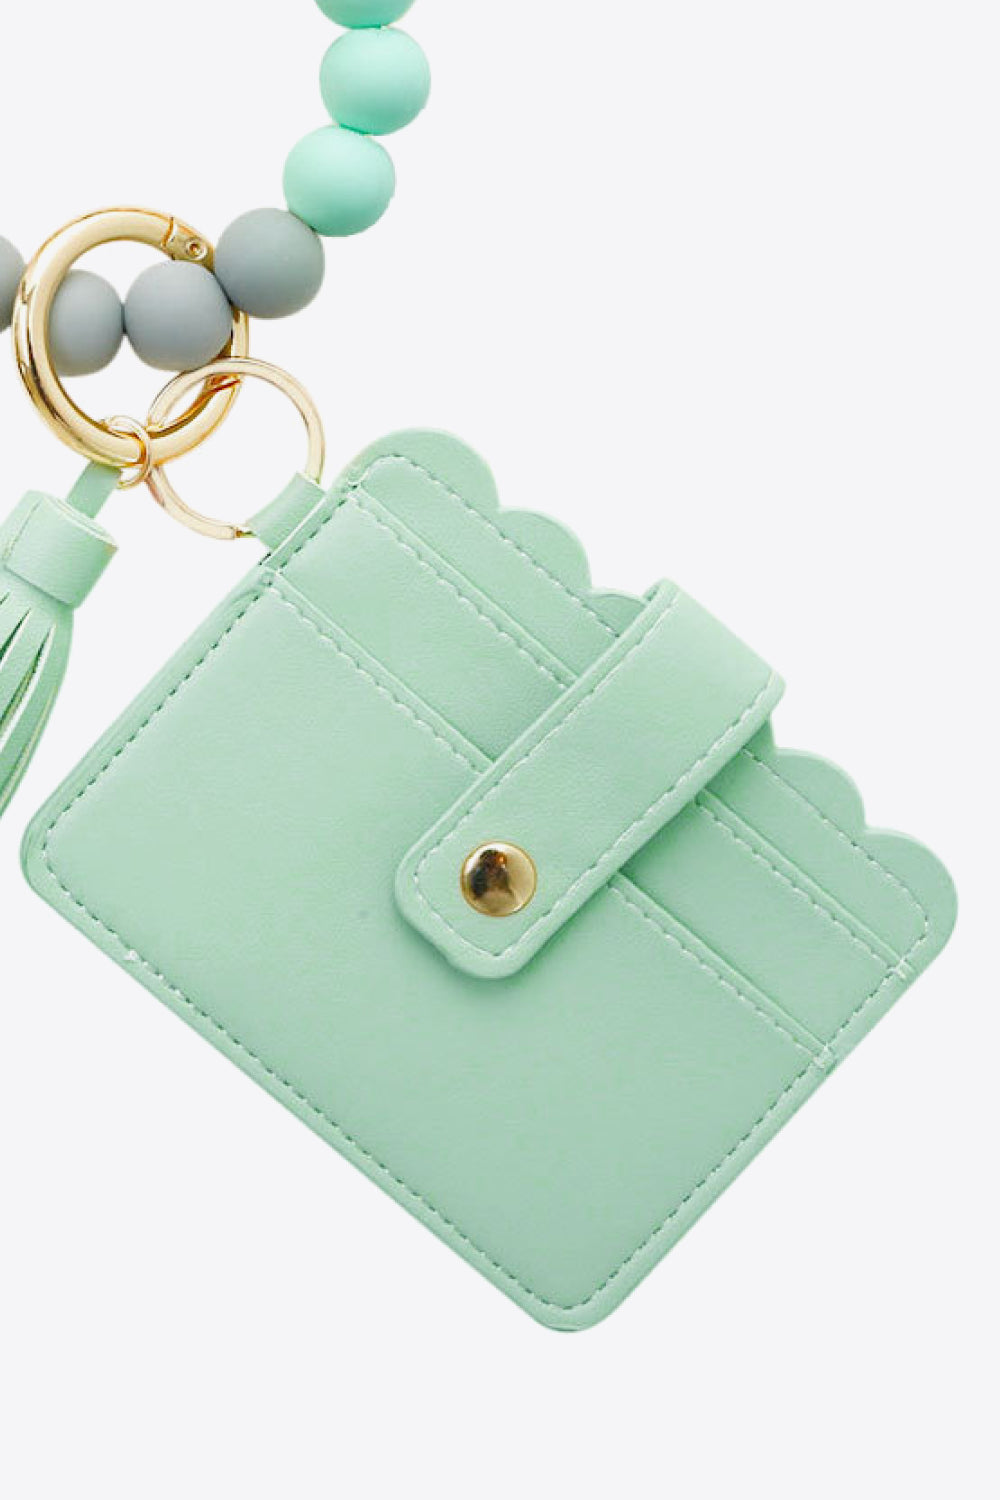 Trendsi Cupid Beauty Supplies Keychains 2-Pack Mini Purse Tassel Key Chain